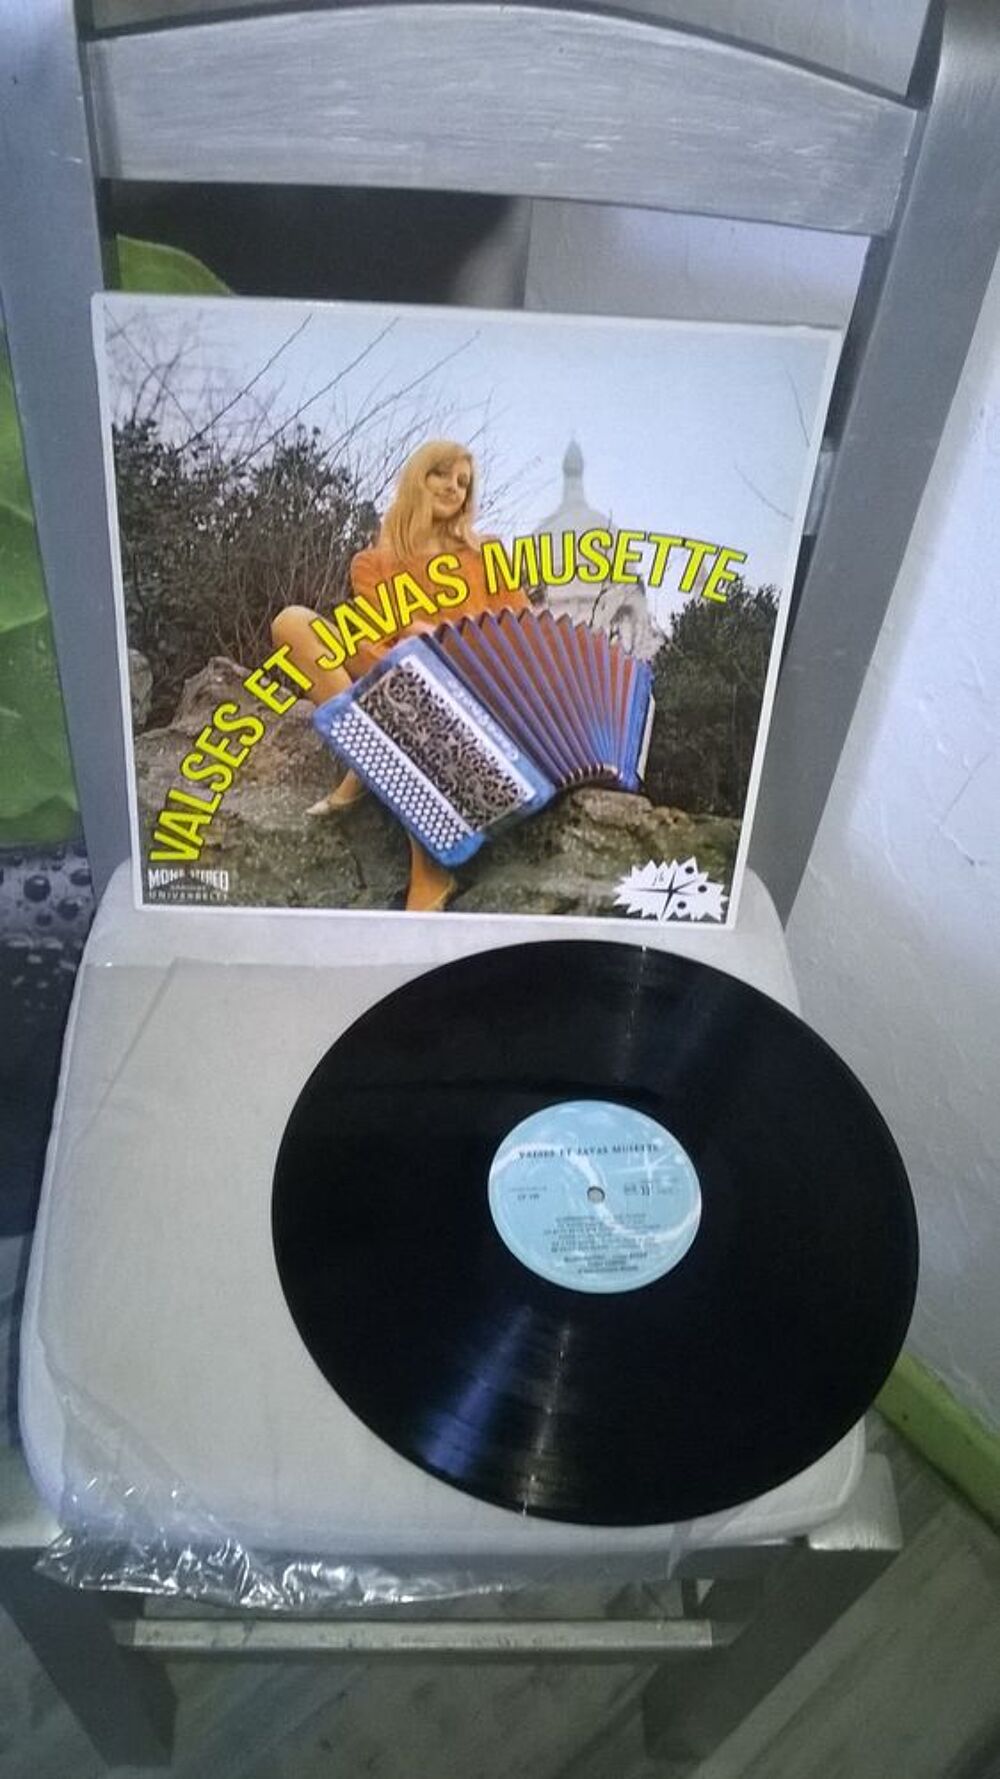 Vinyle Valses et Javas Musette
Maurice Vittenet - L. Attard CD et vinyles